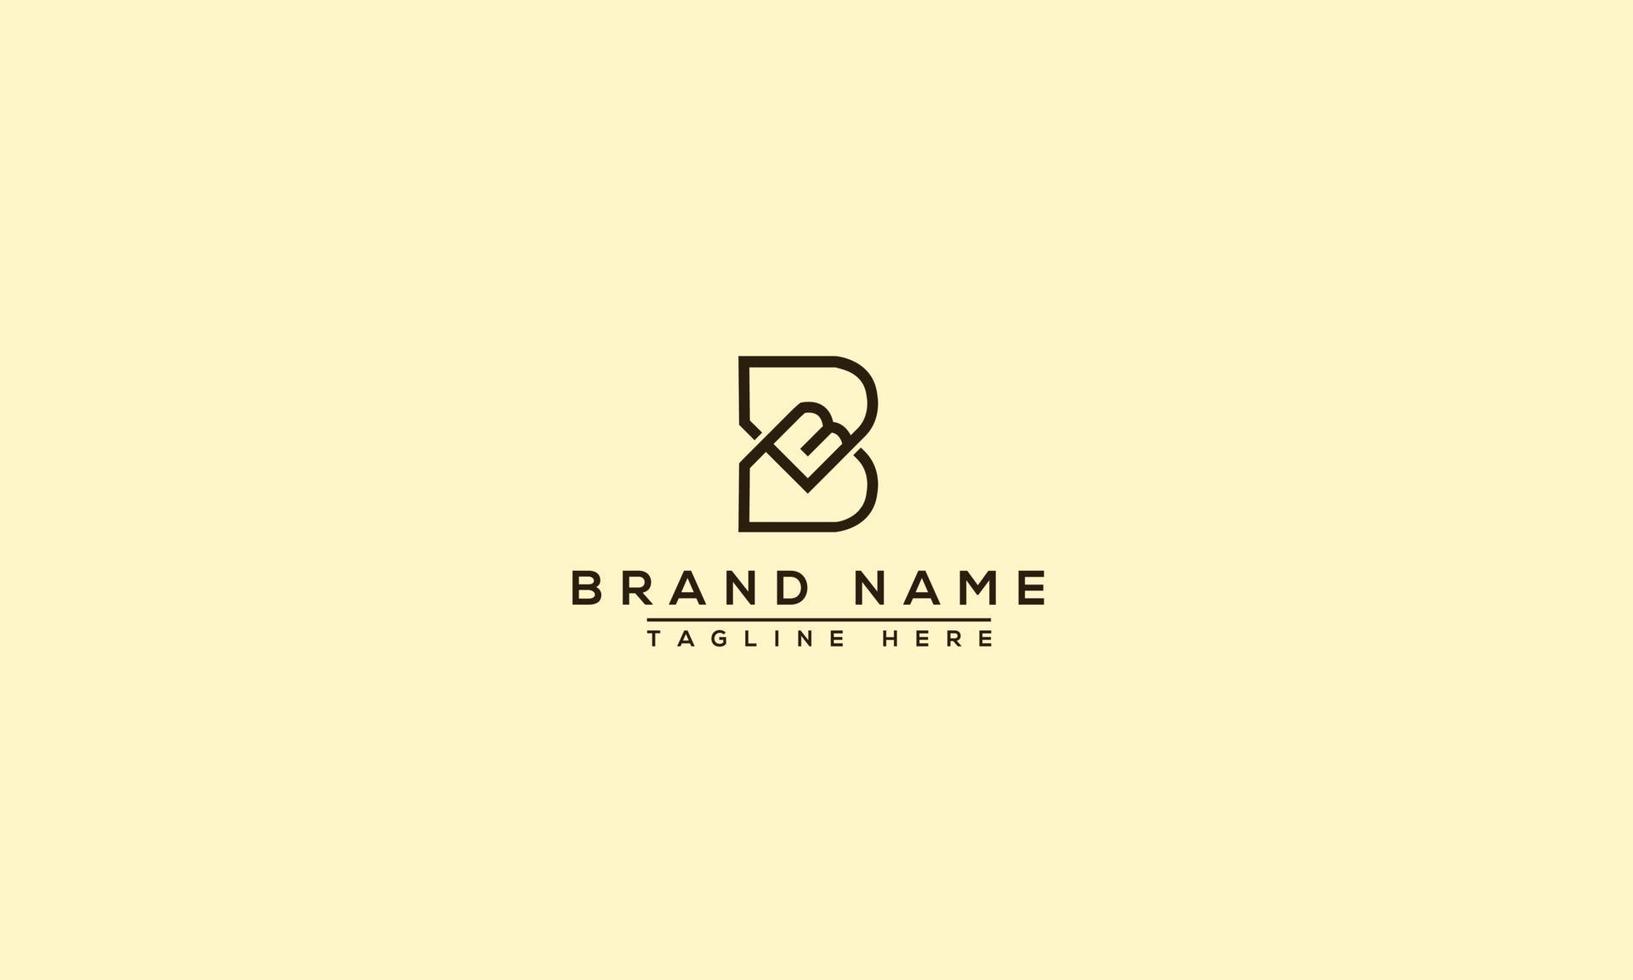 elemento de branding gráfico de vetor de modelo de design de logotipo bb.